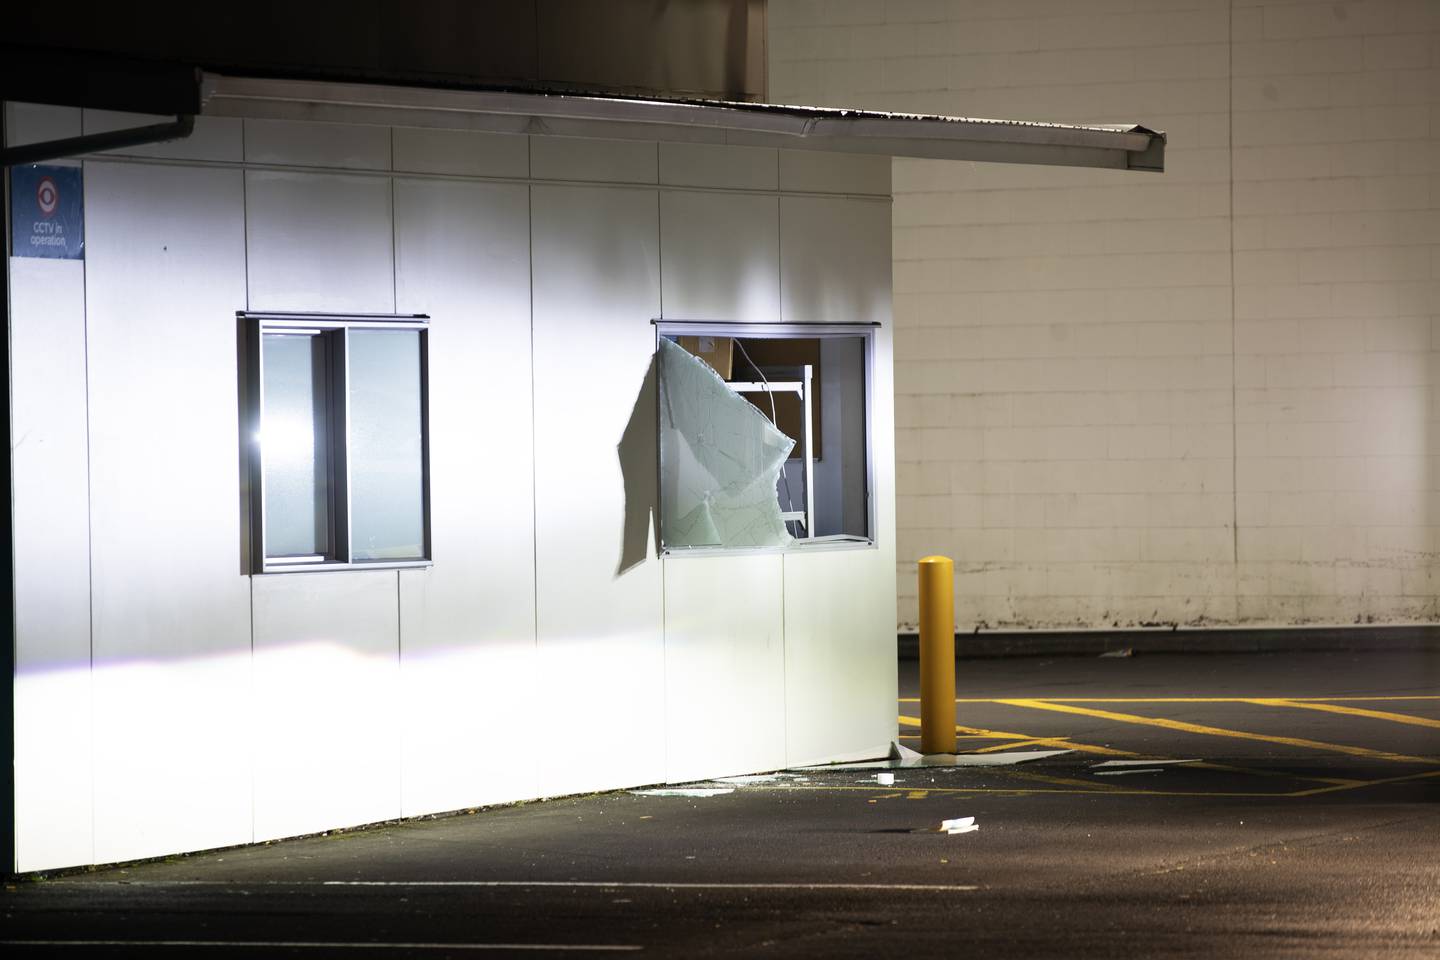 赛百味 Rosedale 分店的窗户被打碎。 照片/海登伍德沃德